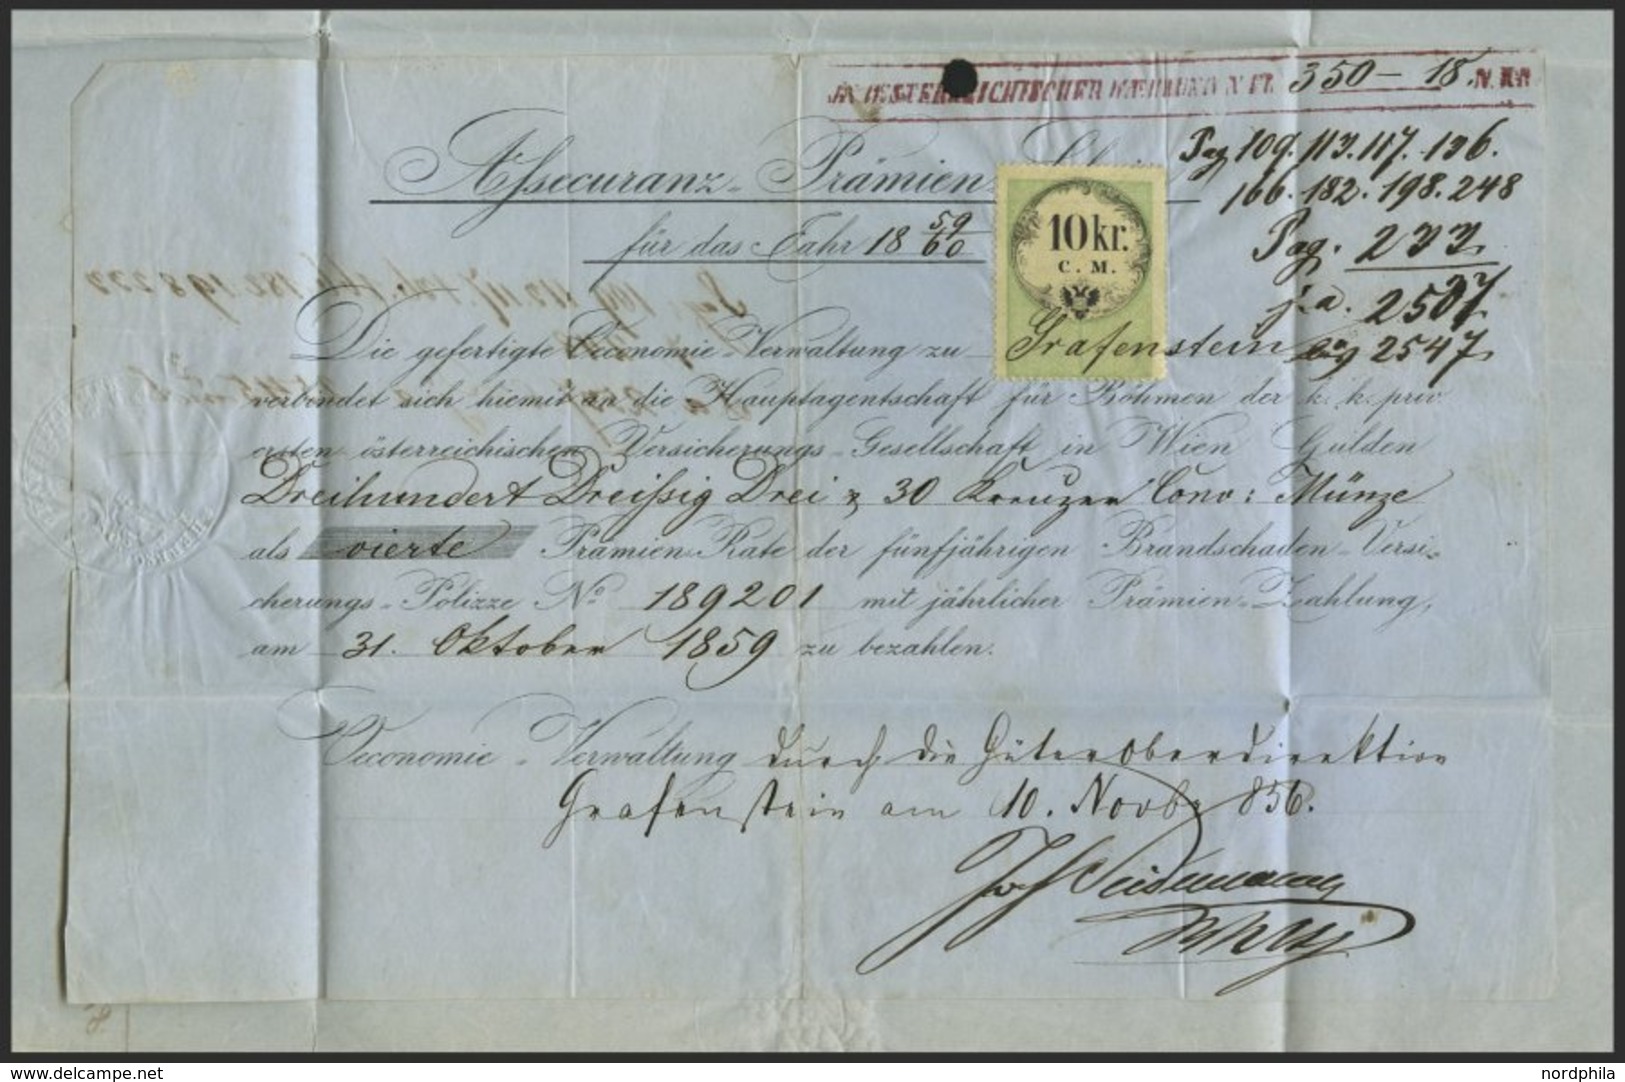 ÖSTERREICH 14II BRIEF, 1859, 10 Kr. Braun, Type II, Auf Brief Der österreichischen Versicherungsanstalt Mit R4 PRAG An D - Usati